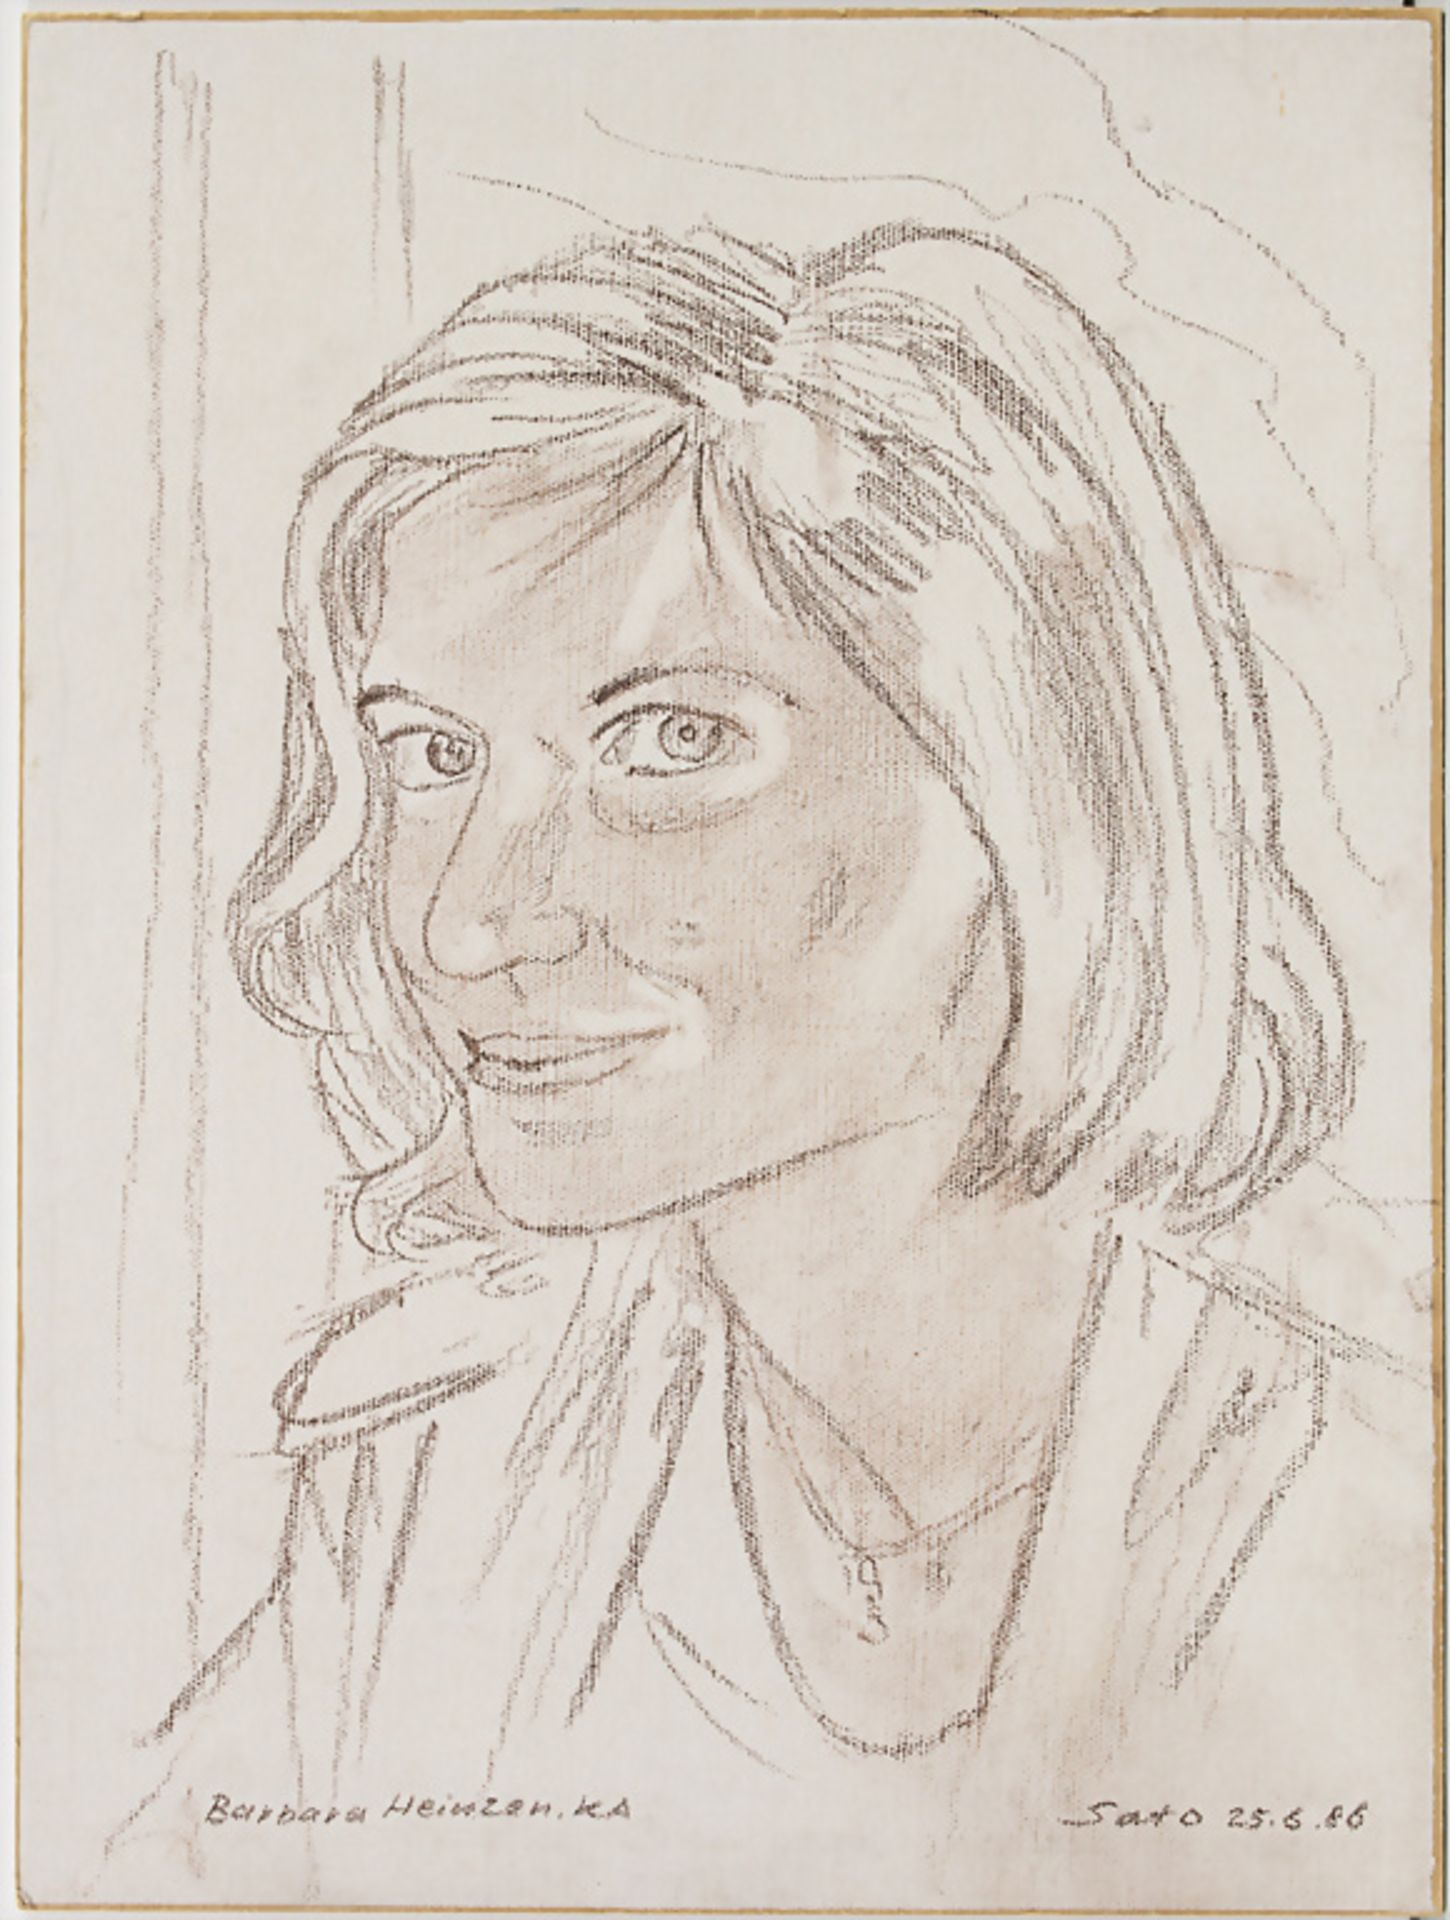 Hardy Schneider-Sato (1919-2002), 'Porträt von Barbara Heinzken' / A portrait, 1986